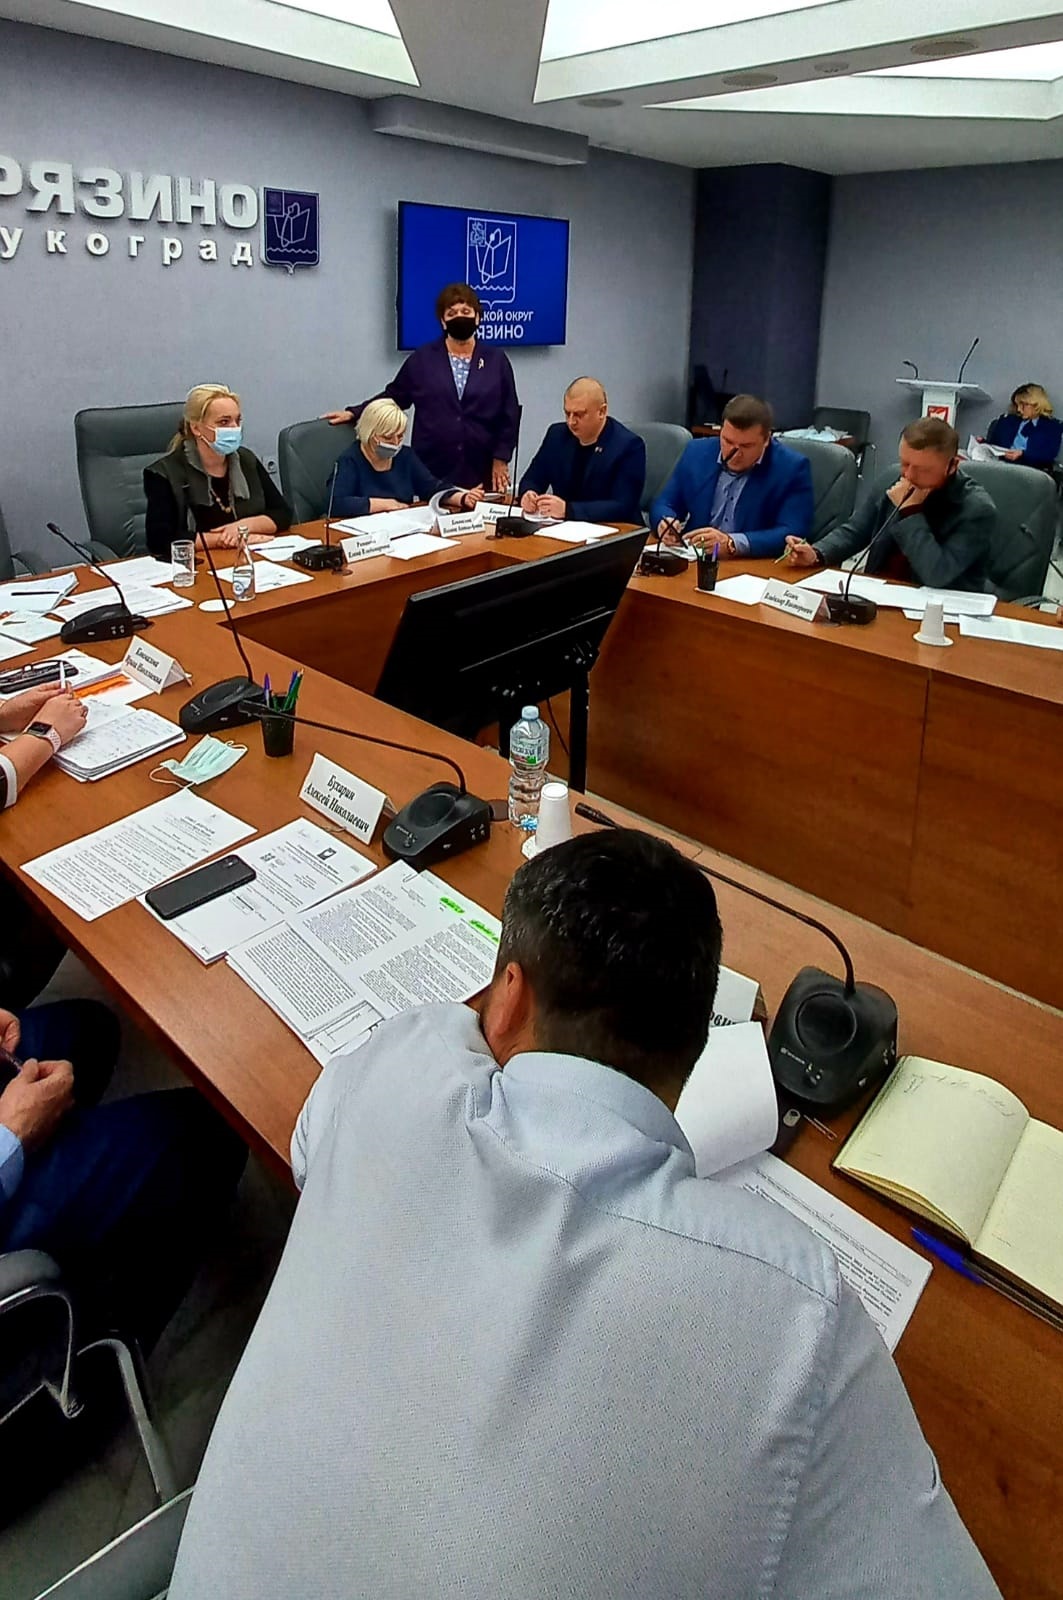 0 ноября 2021 года состоялось заседание Совета депутатов городского округа Фрязино, на котором был рассмотрен проект бюджета городского округа Фрязино на 2022 год и плановый период 2023 и 2024 годов.